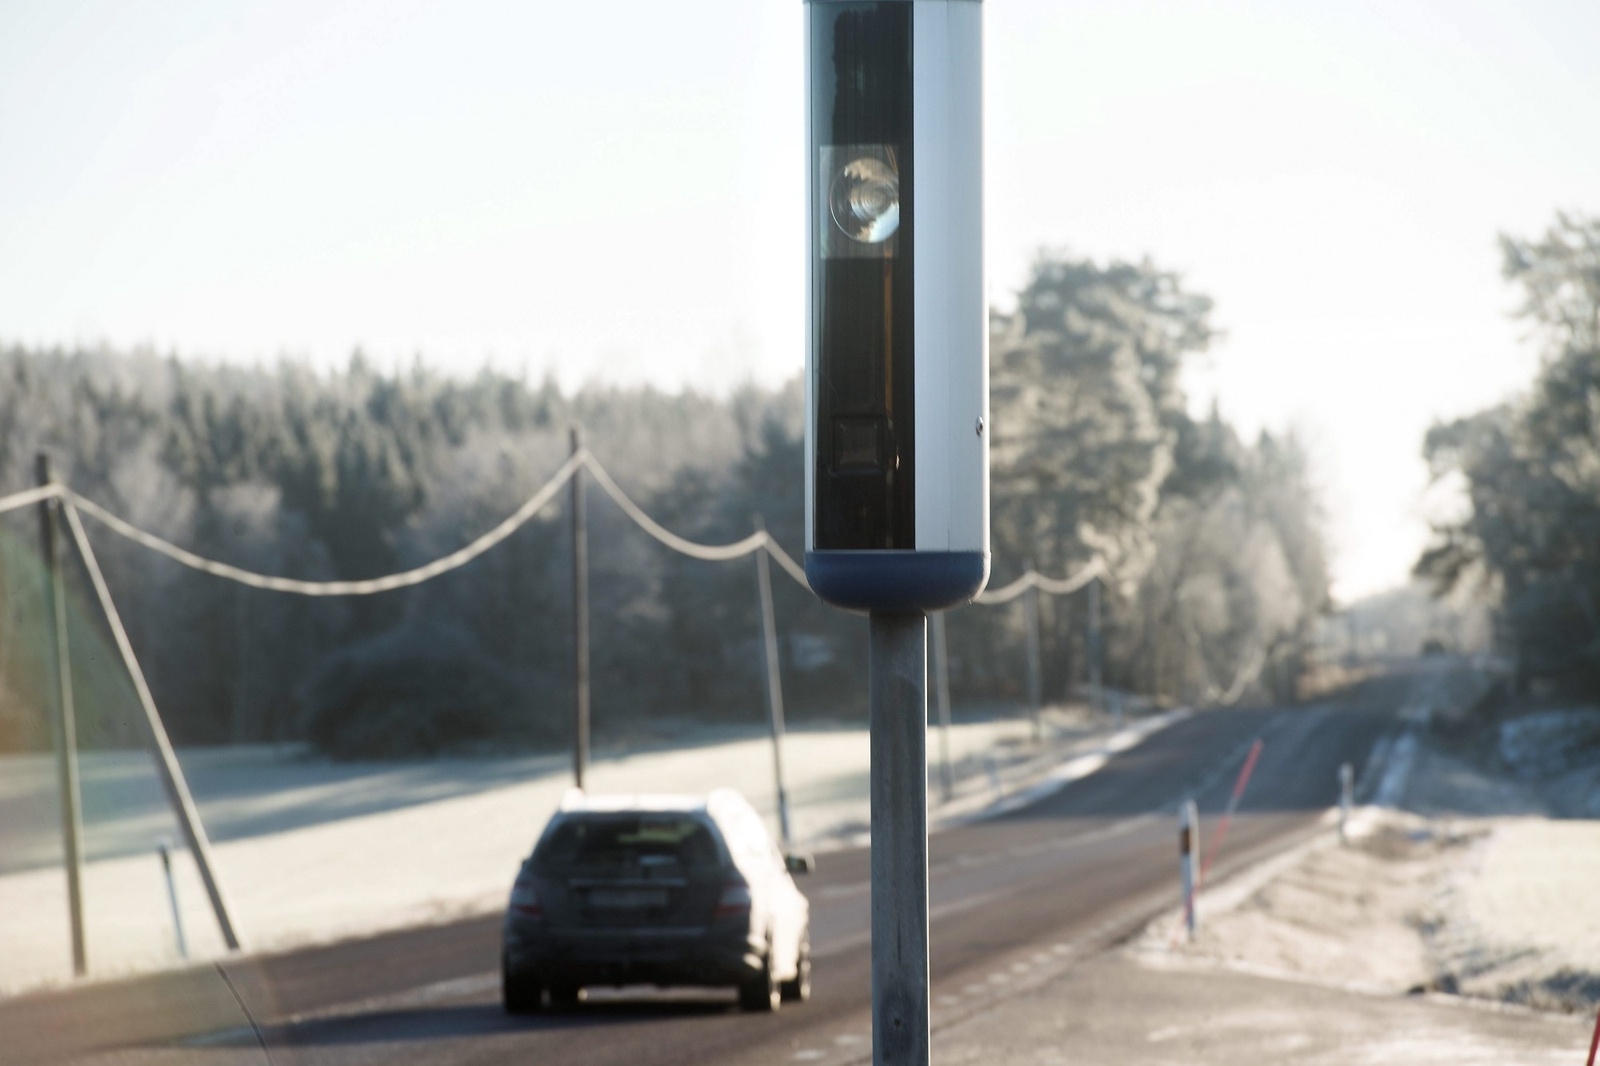 – Målet med ATK, automatiserad trafiksäkerhetskontroll, är att hastighetssäkra vägsträckorna med så få utfärdade böter som möjligt. Det gemensamma målet är trafiksäkerhet, säger kommissarie Anders Drugge.
Foto: Fredrik Sandberg/TT